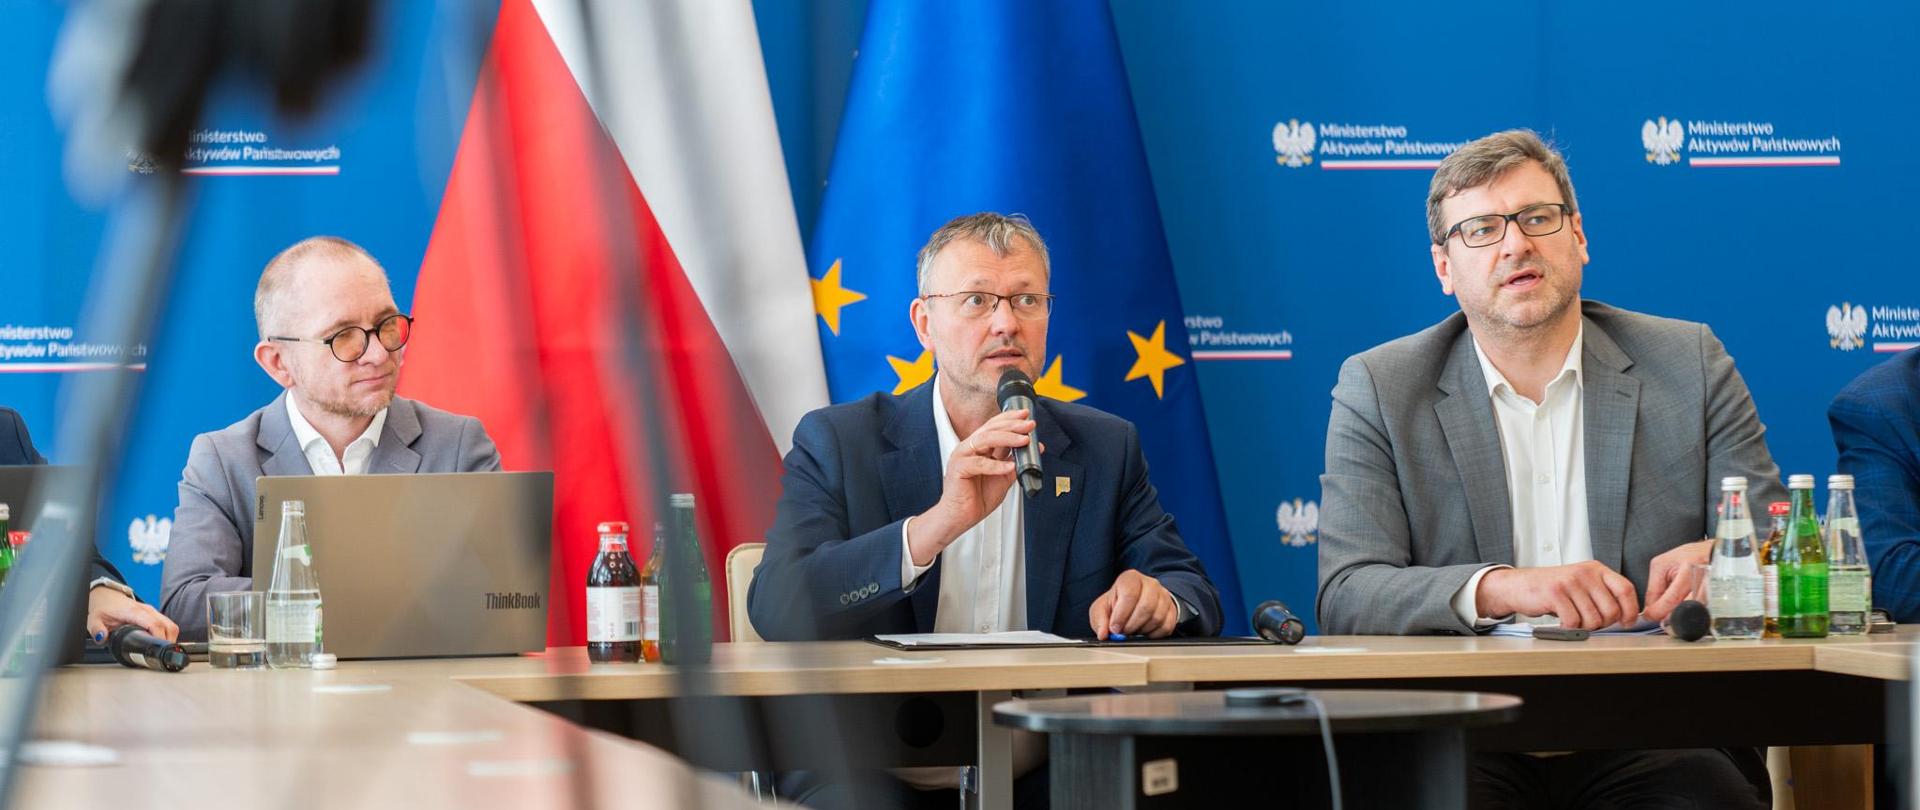 Wiceminister Jacek Bartmiński siedzi w garniturze przy stole. W ręku trzyma mikrofon. W tle ścianka i flagi. Po obu stronach siedzą pracownicy resortu. 